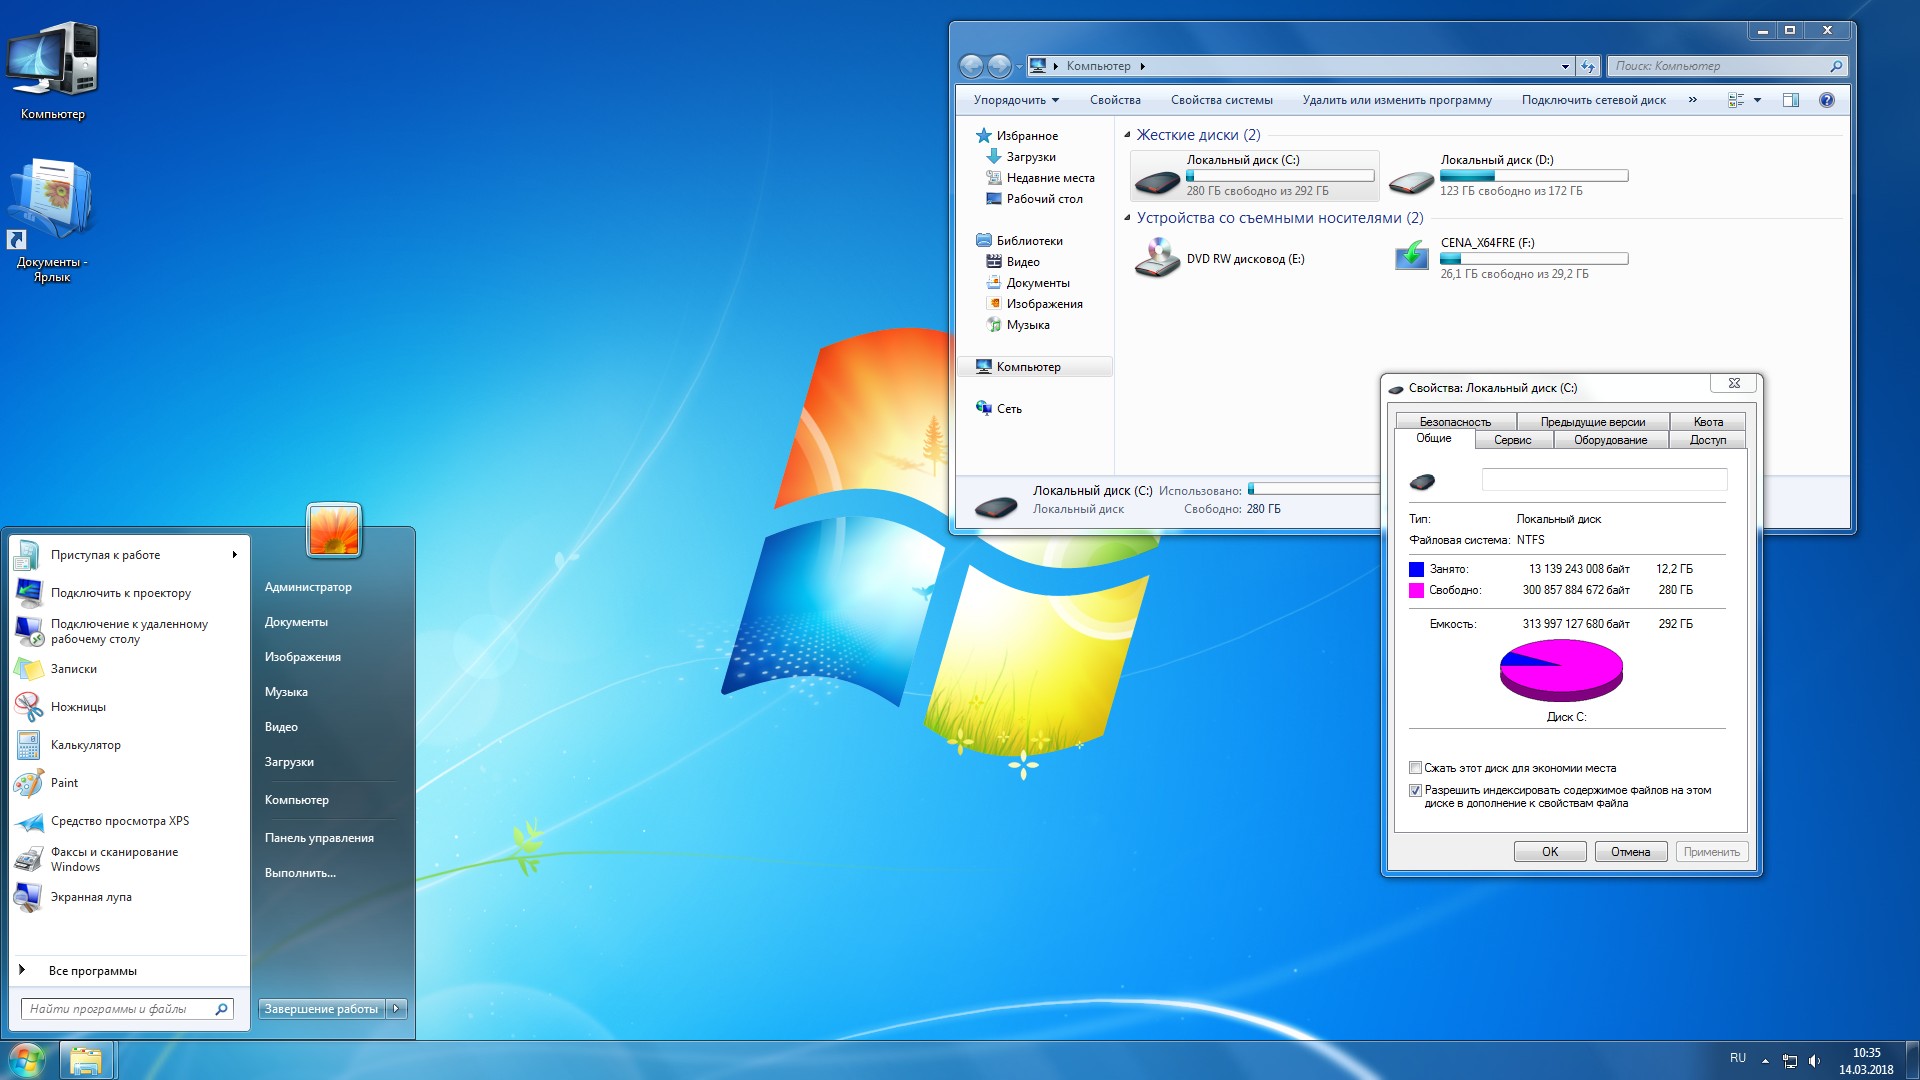 Windows 7 Enterprise x64